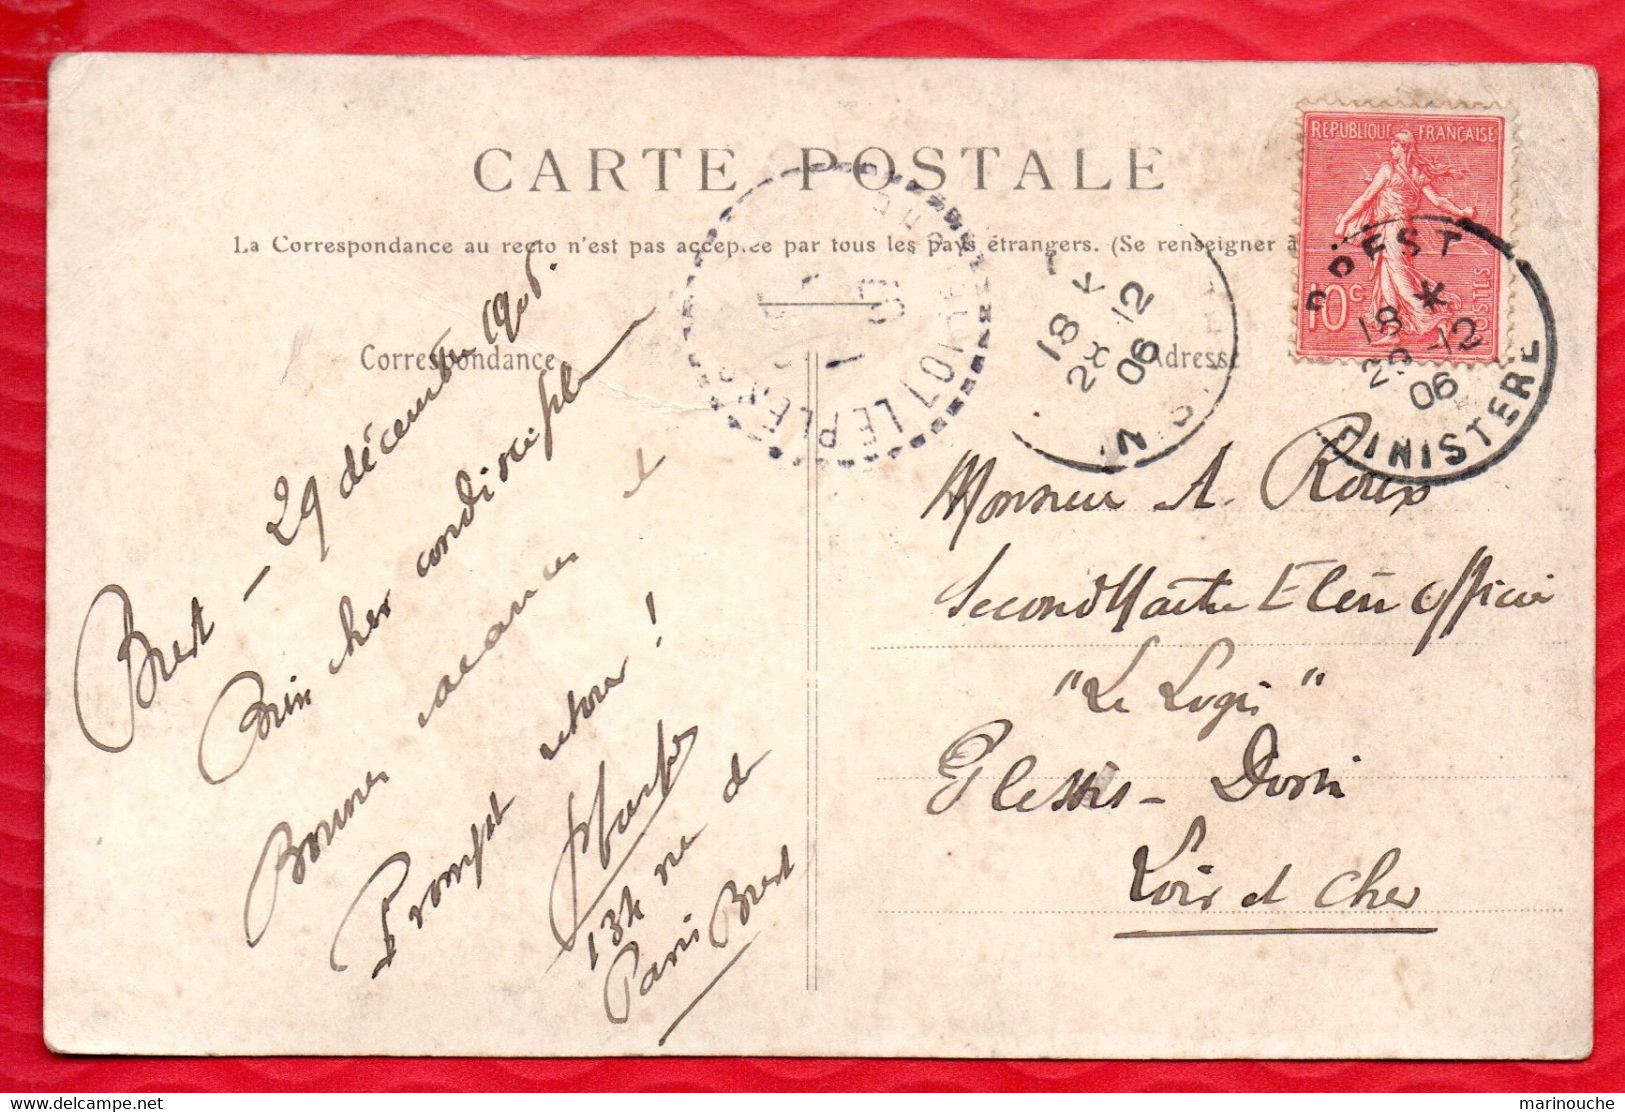 29 BREST - L'auteur De Ce Tableau, Mr Claude Poullaouec Est Représenté Au Coin De La Carte - Postée De BREST En 1906 R/V - Brest